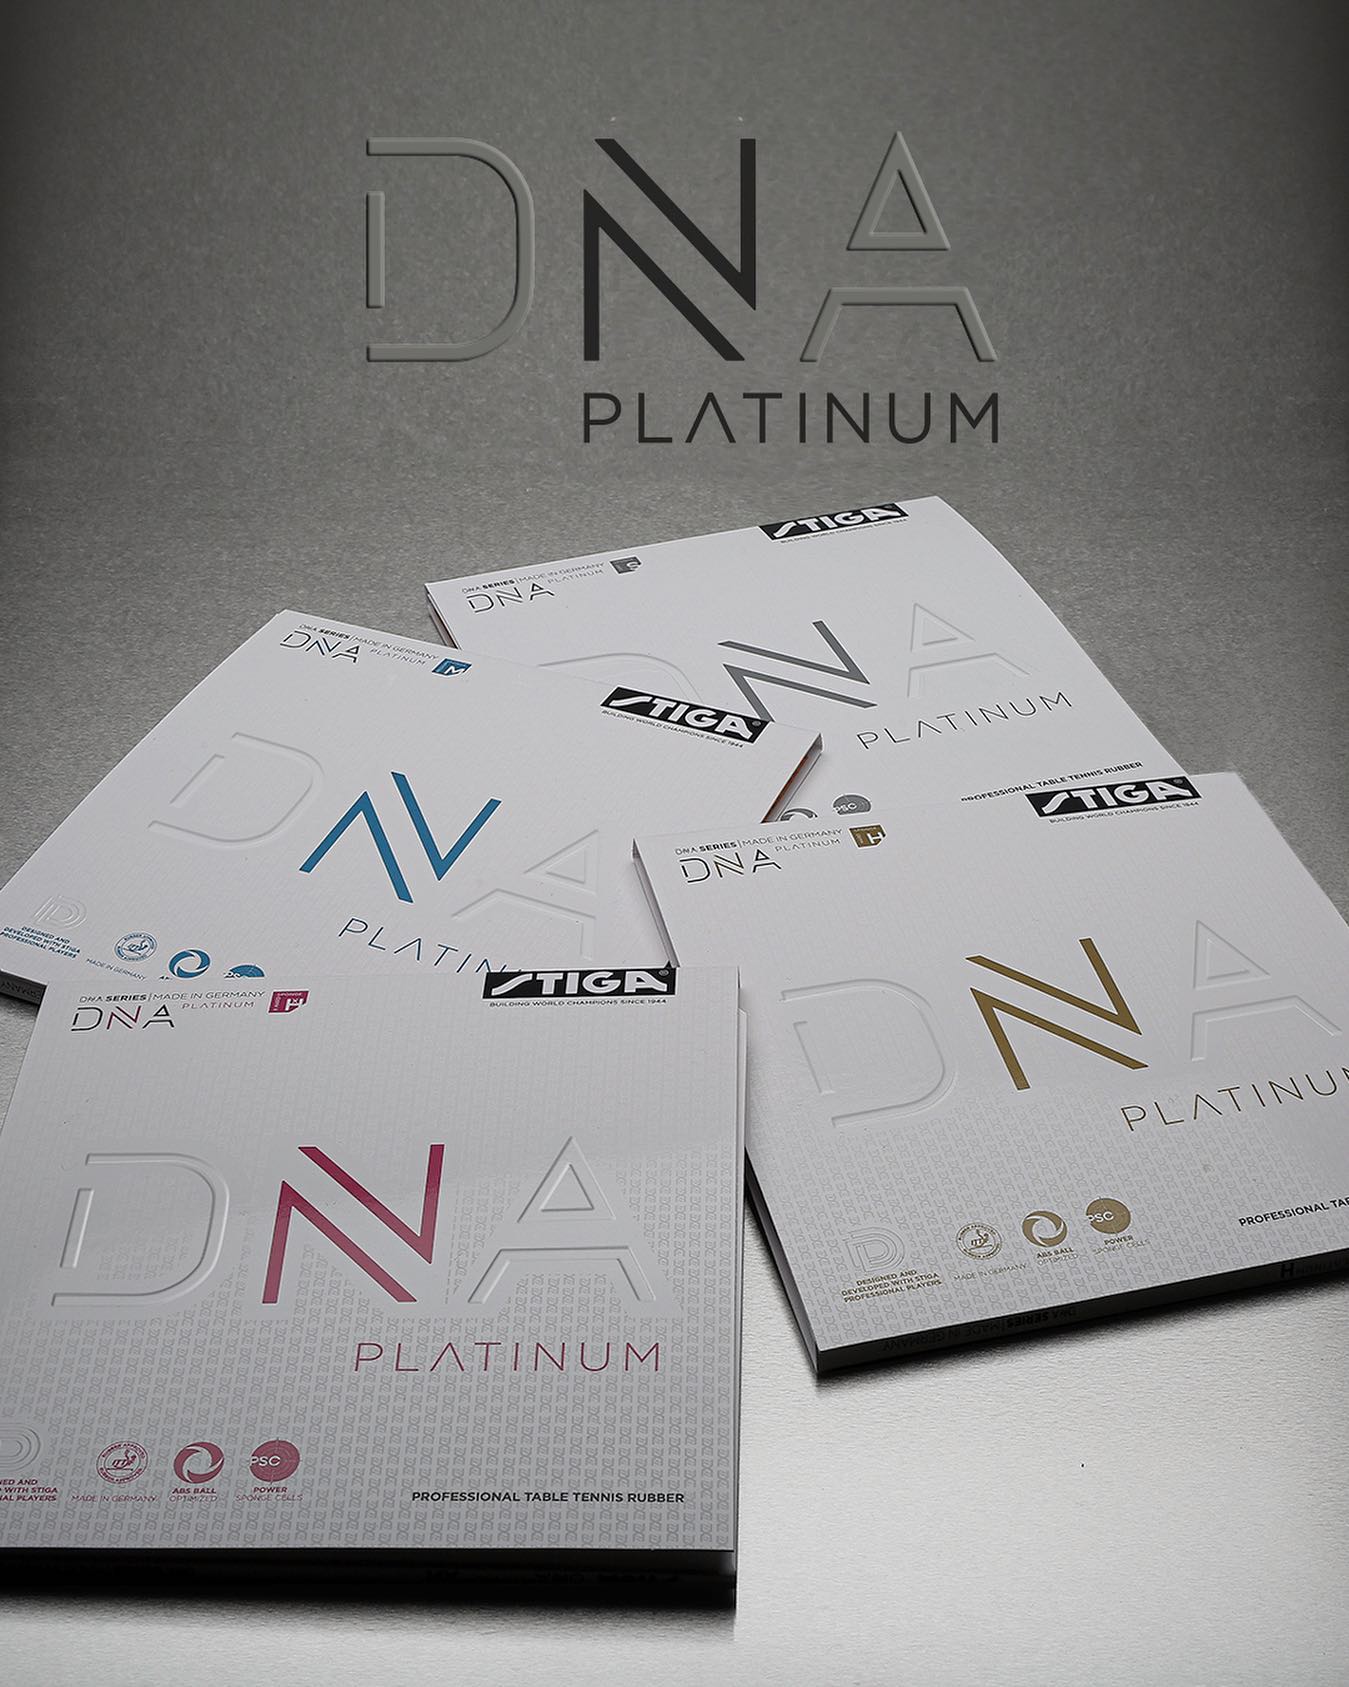 桌球膠皮 STIGA DNA Platinum M